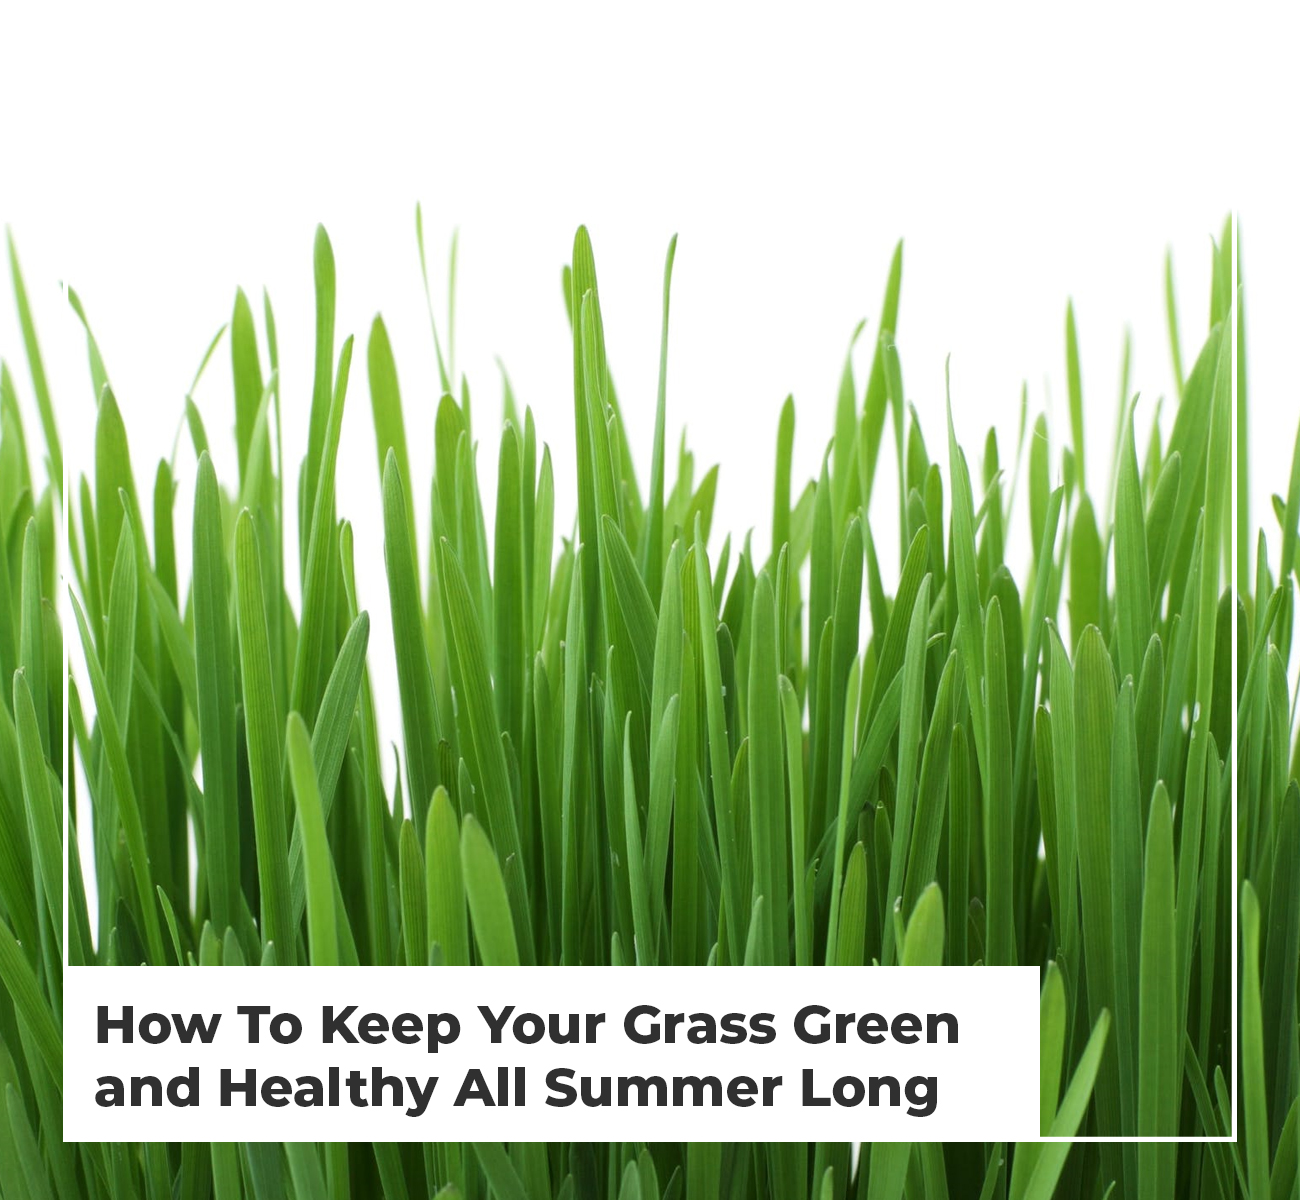 Healthy Grass All Summer